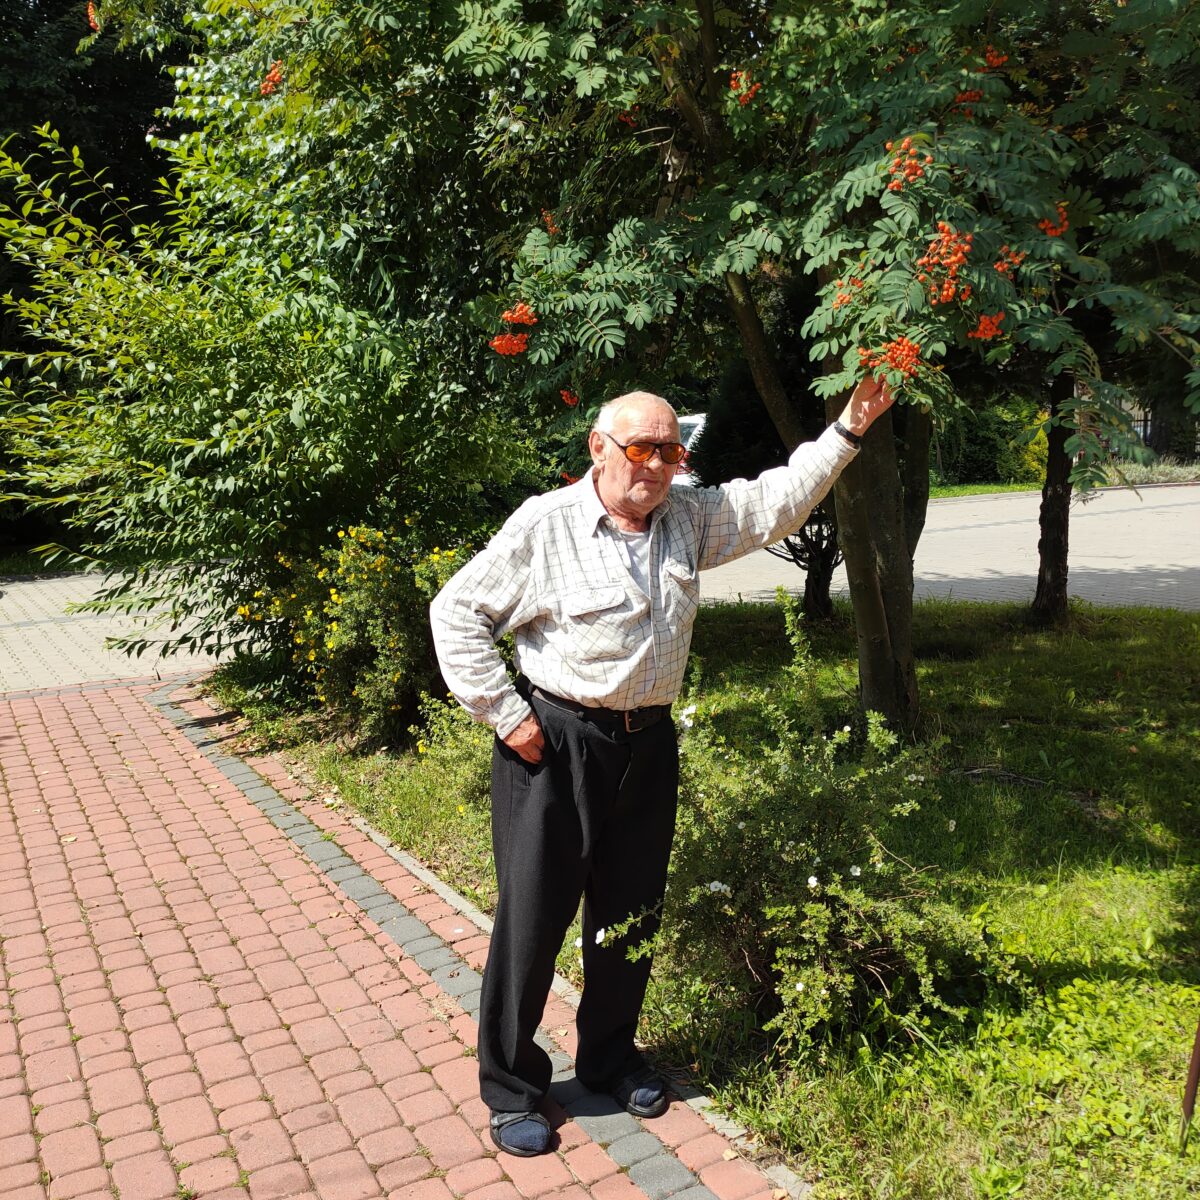 Starszy mężczyzna w okularach stoi na kostce brukowej i trzyma gałąź rosnącej obok jarzębiny. Wkoło jest dużo zieleni.